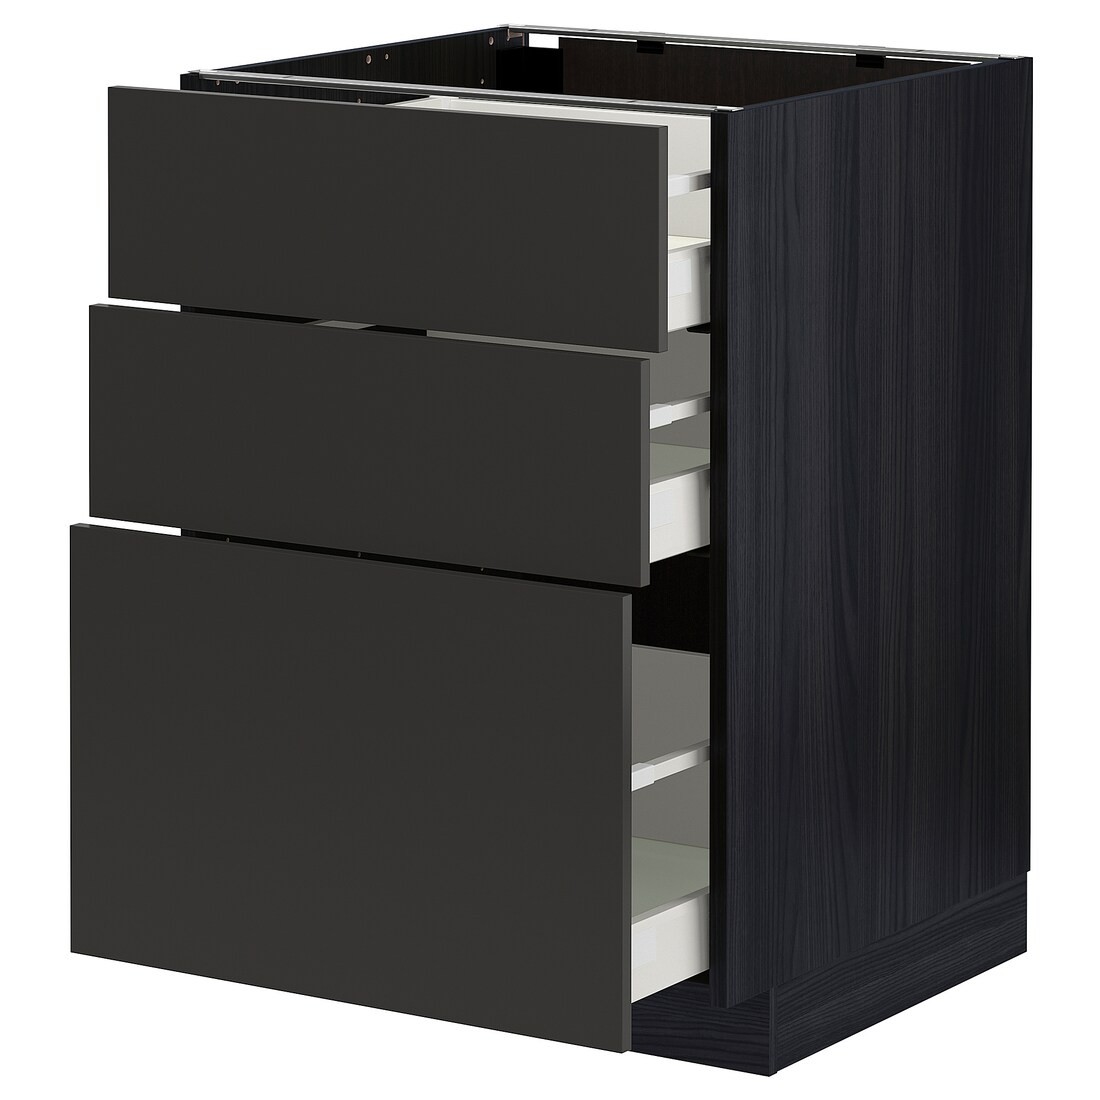 IKEA METOD МЕТОД / MAXIMERA МАКСИМЕРА Напольный шкаф с 3 ящиками, черный / Nickebo матовый антрацит, 60x60 см 69498790 | 694.987.90